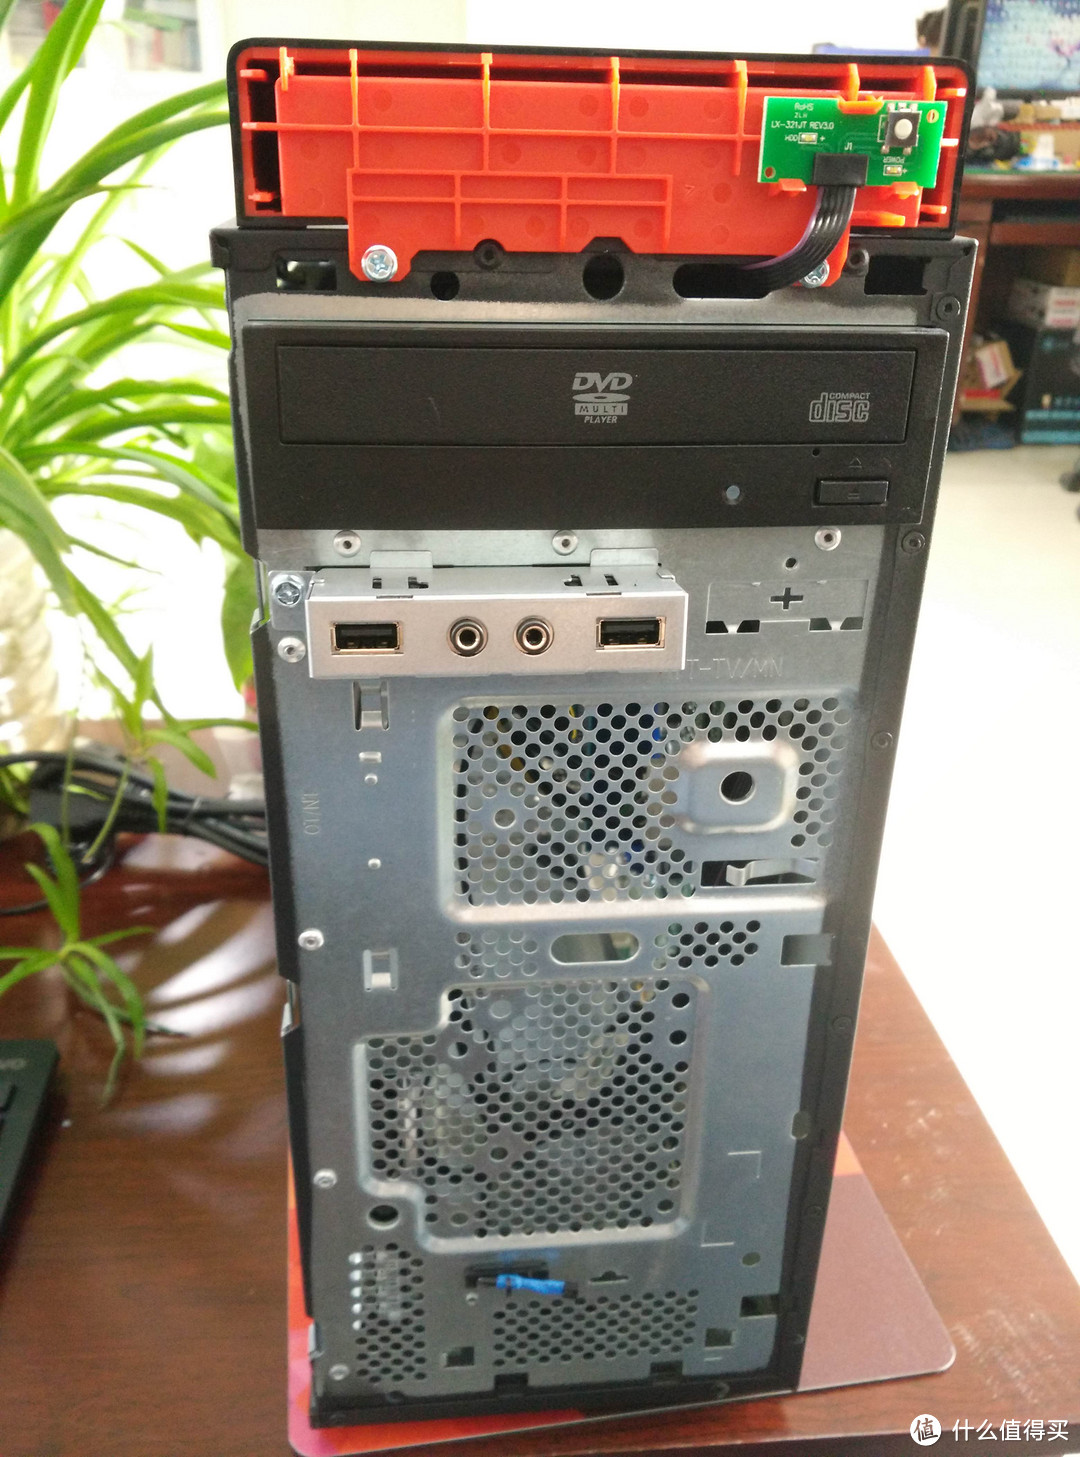 Lenovo 联想 扬天T4900C 商用机 开箱